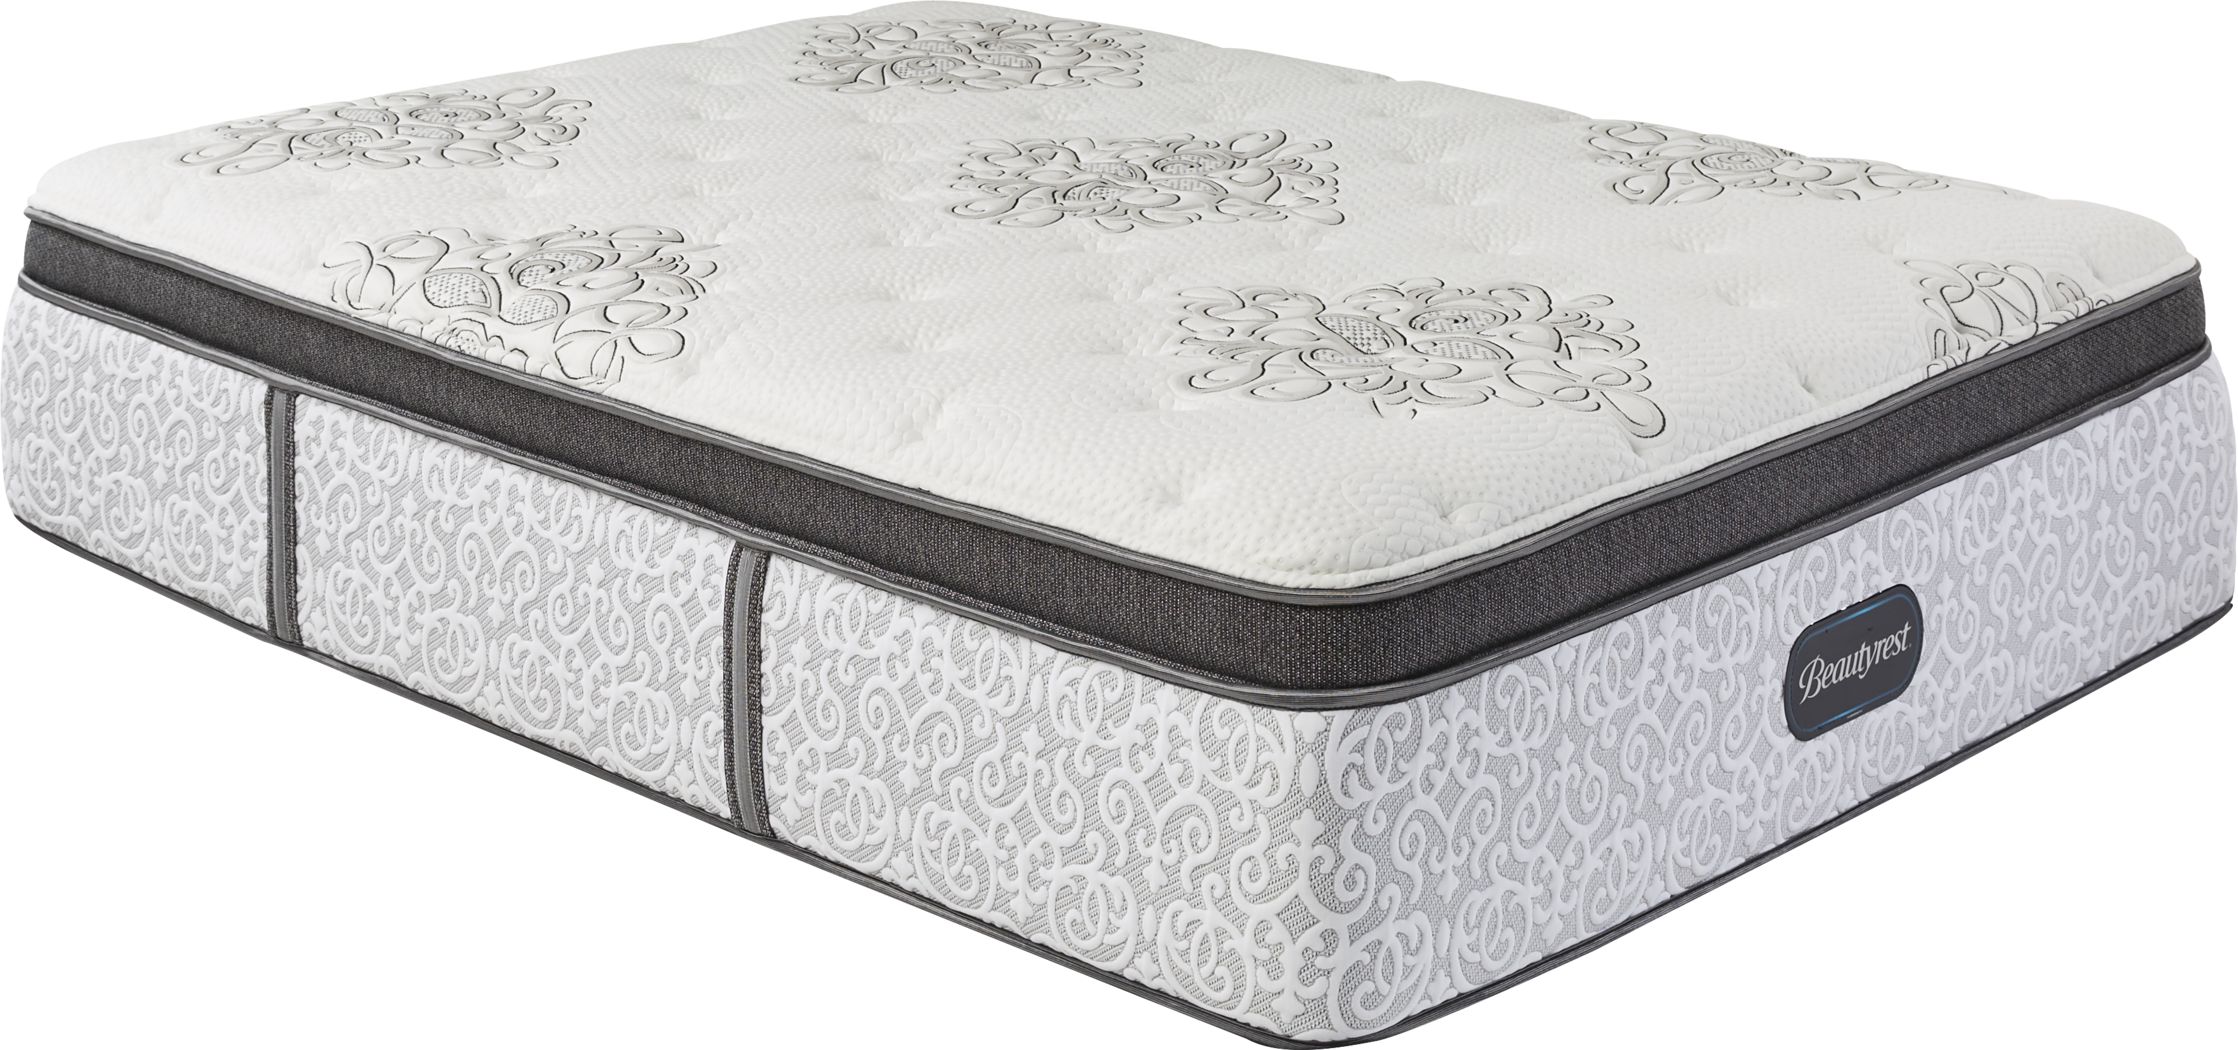 beautyrest legend bradford queen mattress